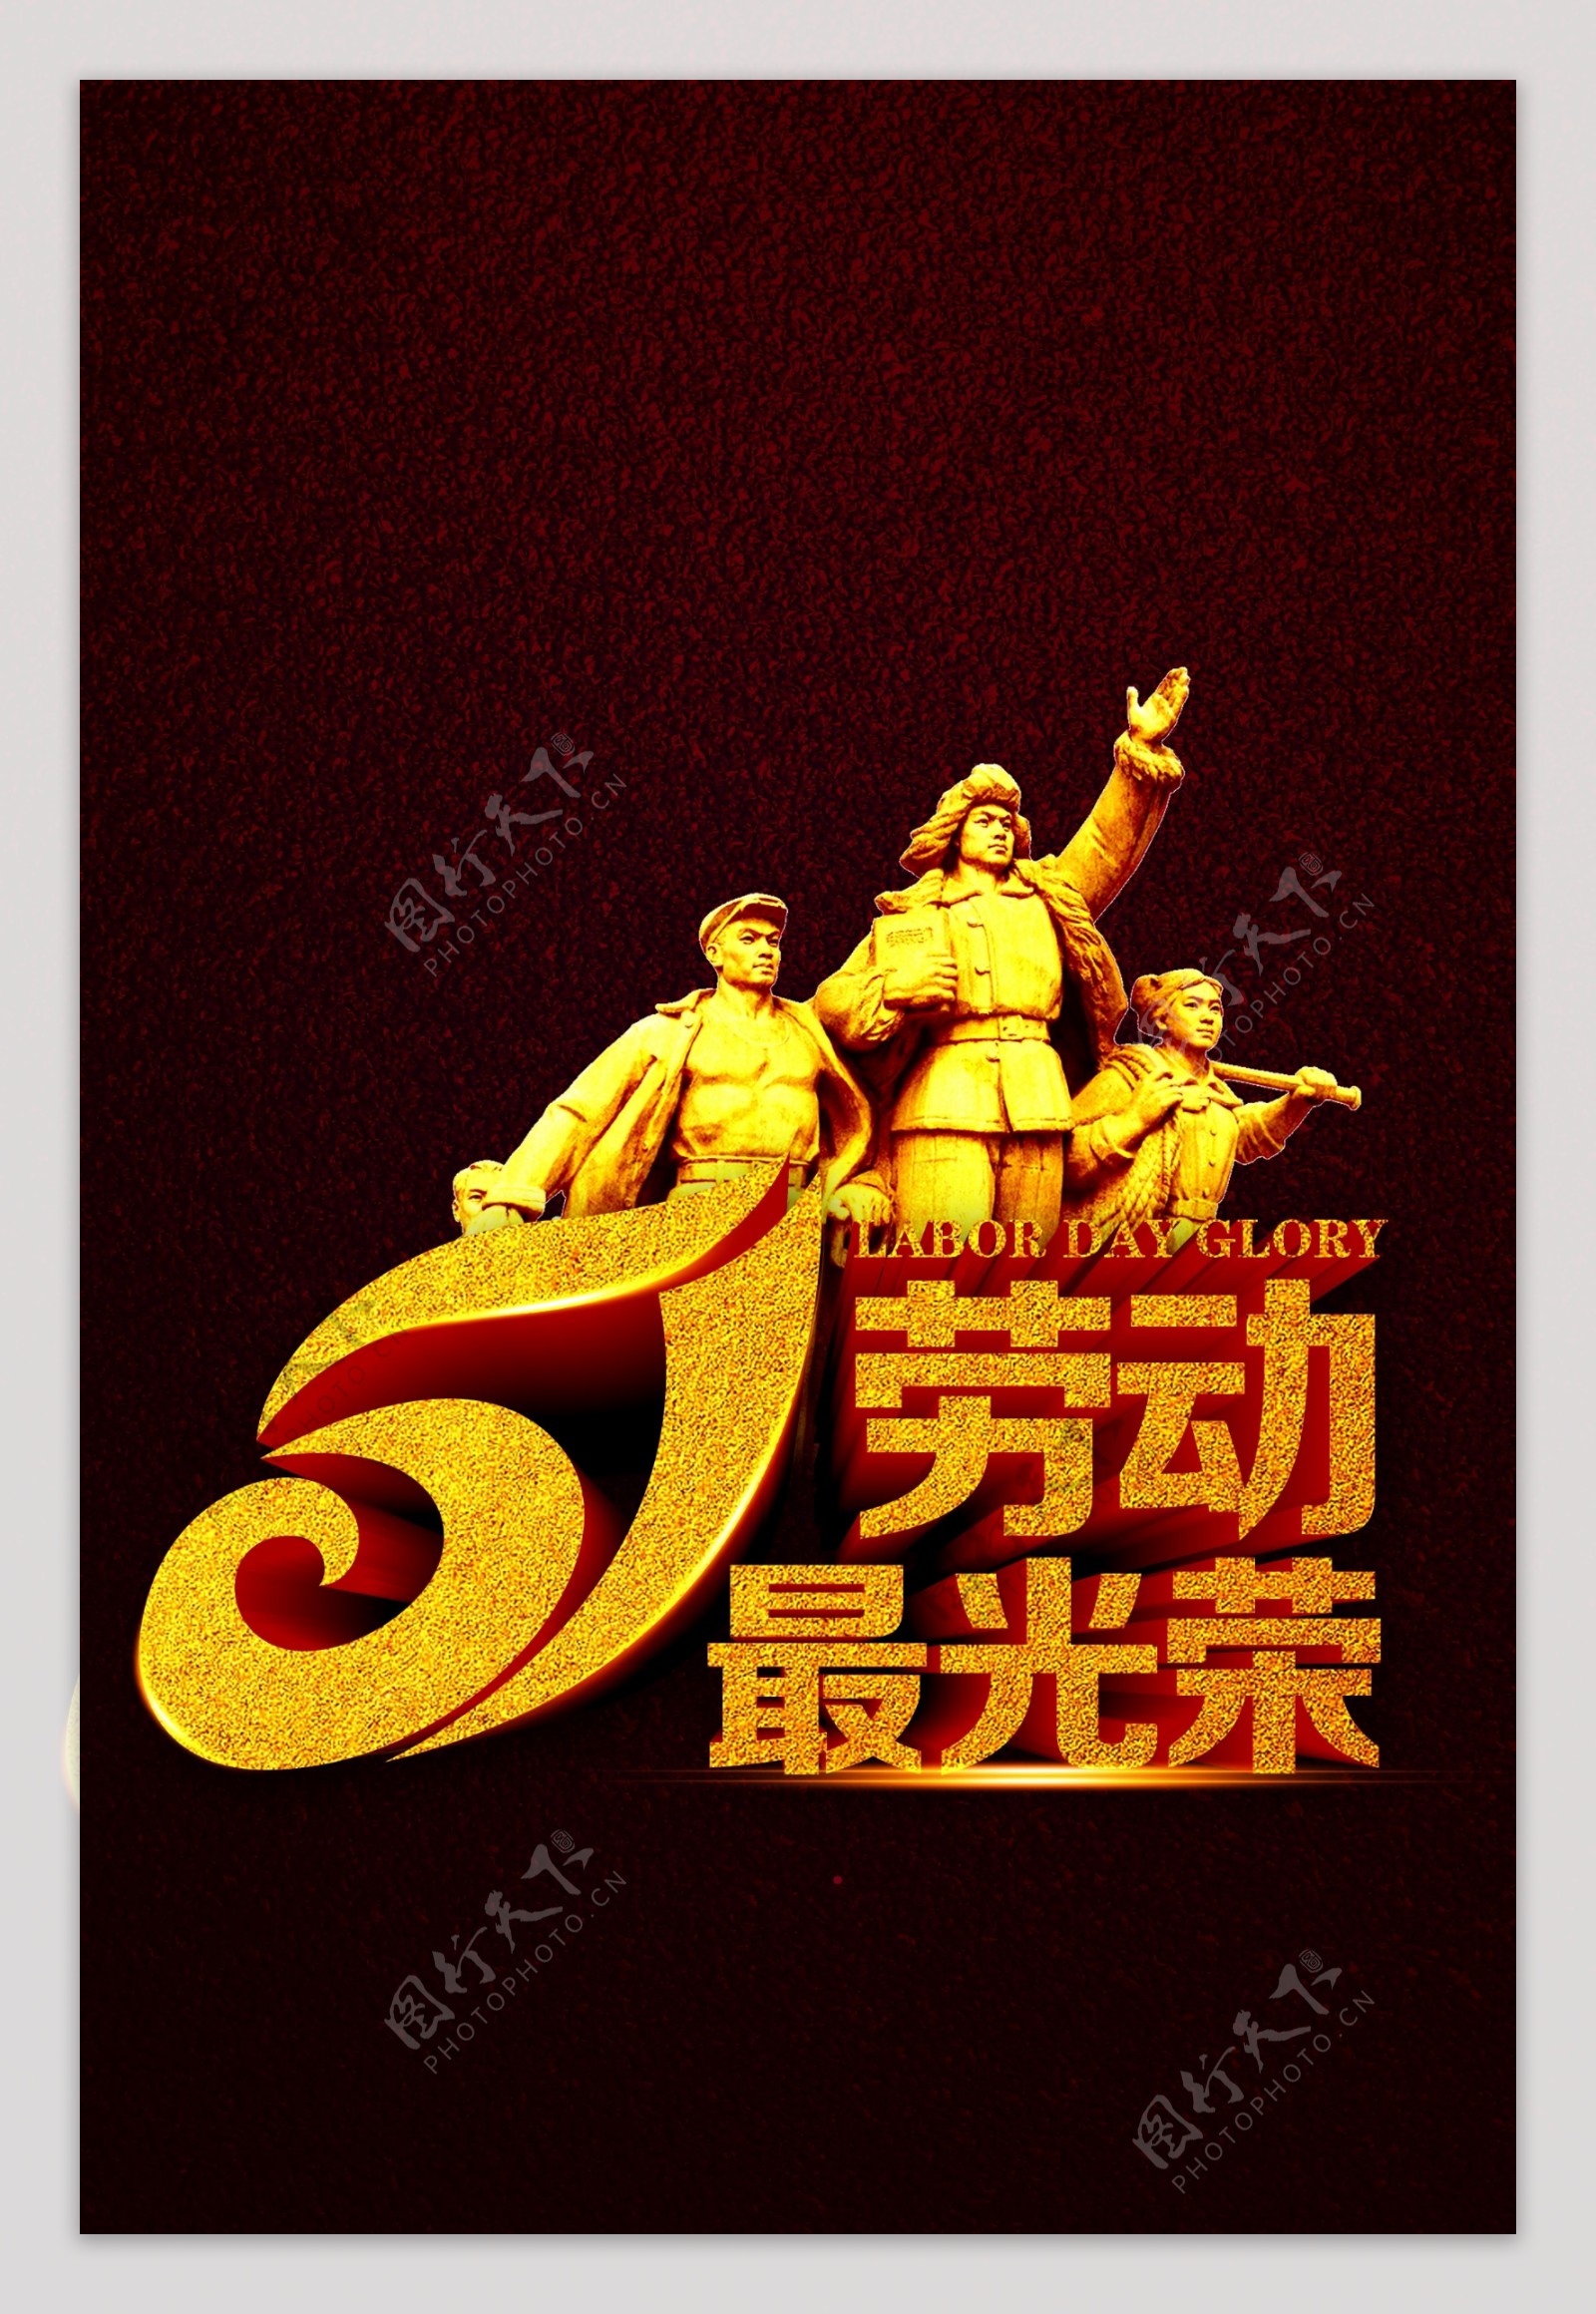 51劳动最光荣雕像海报背景设计